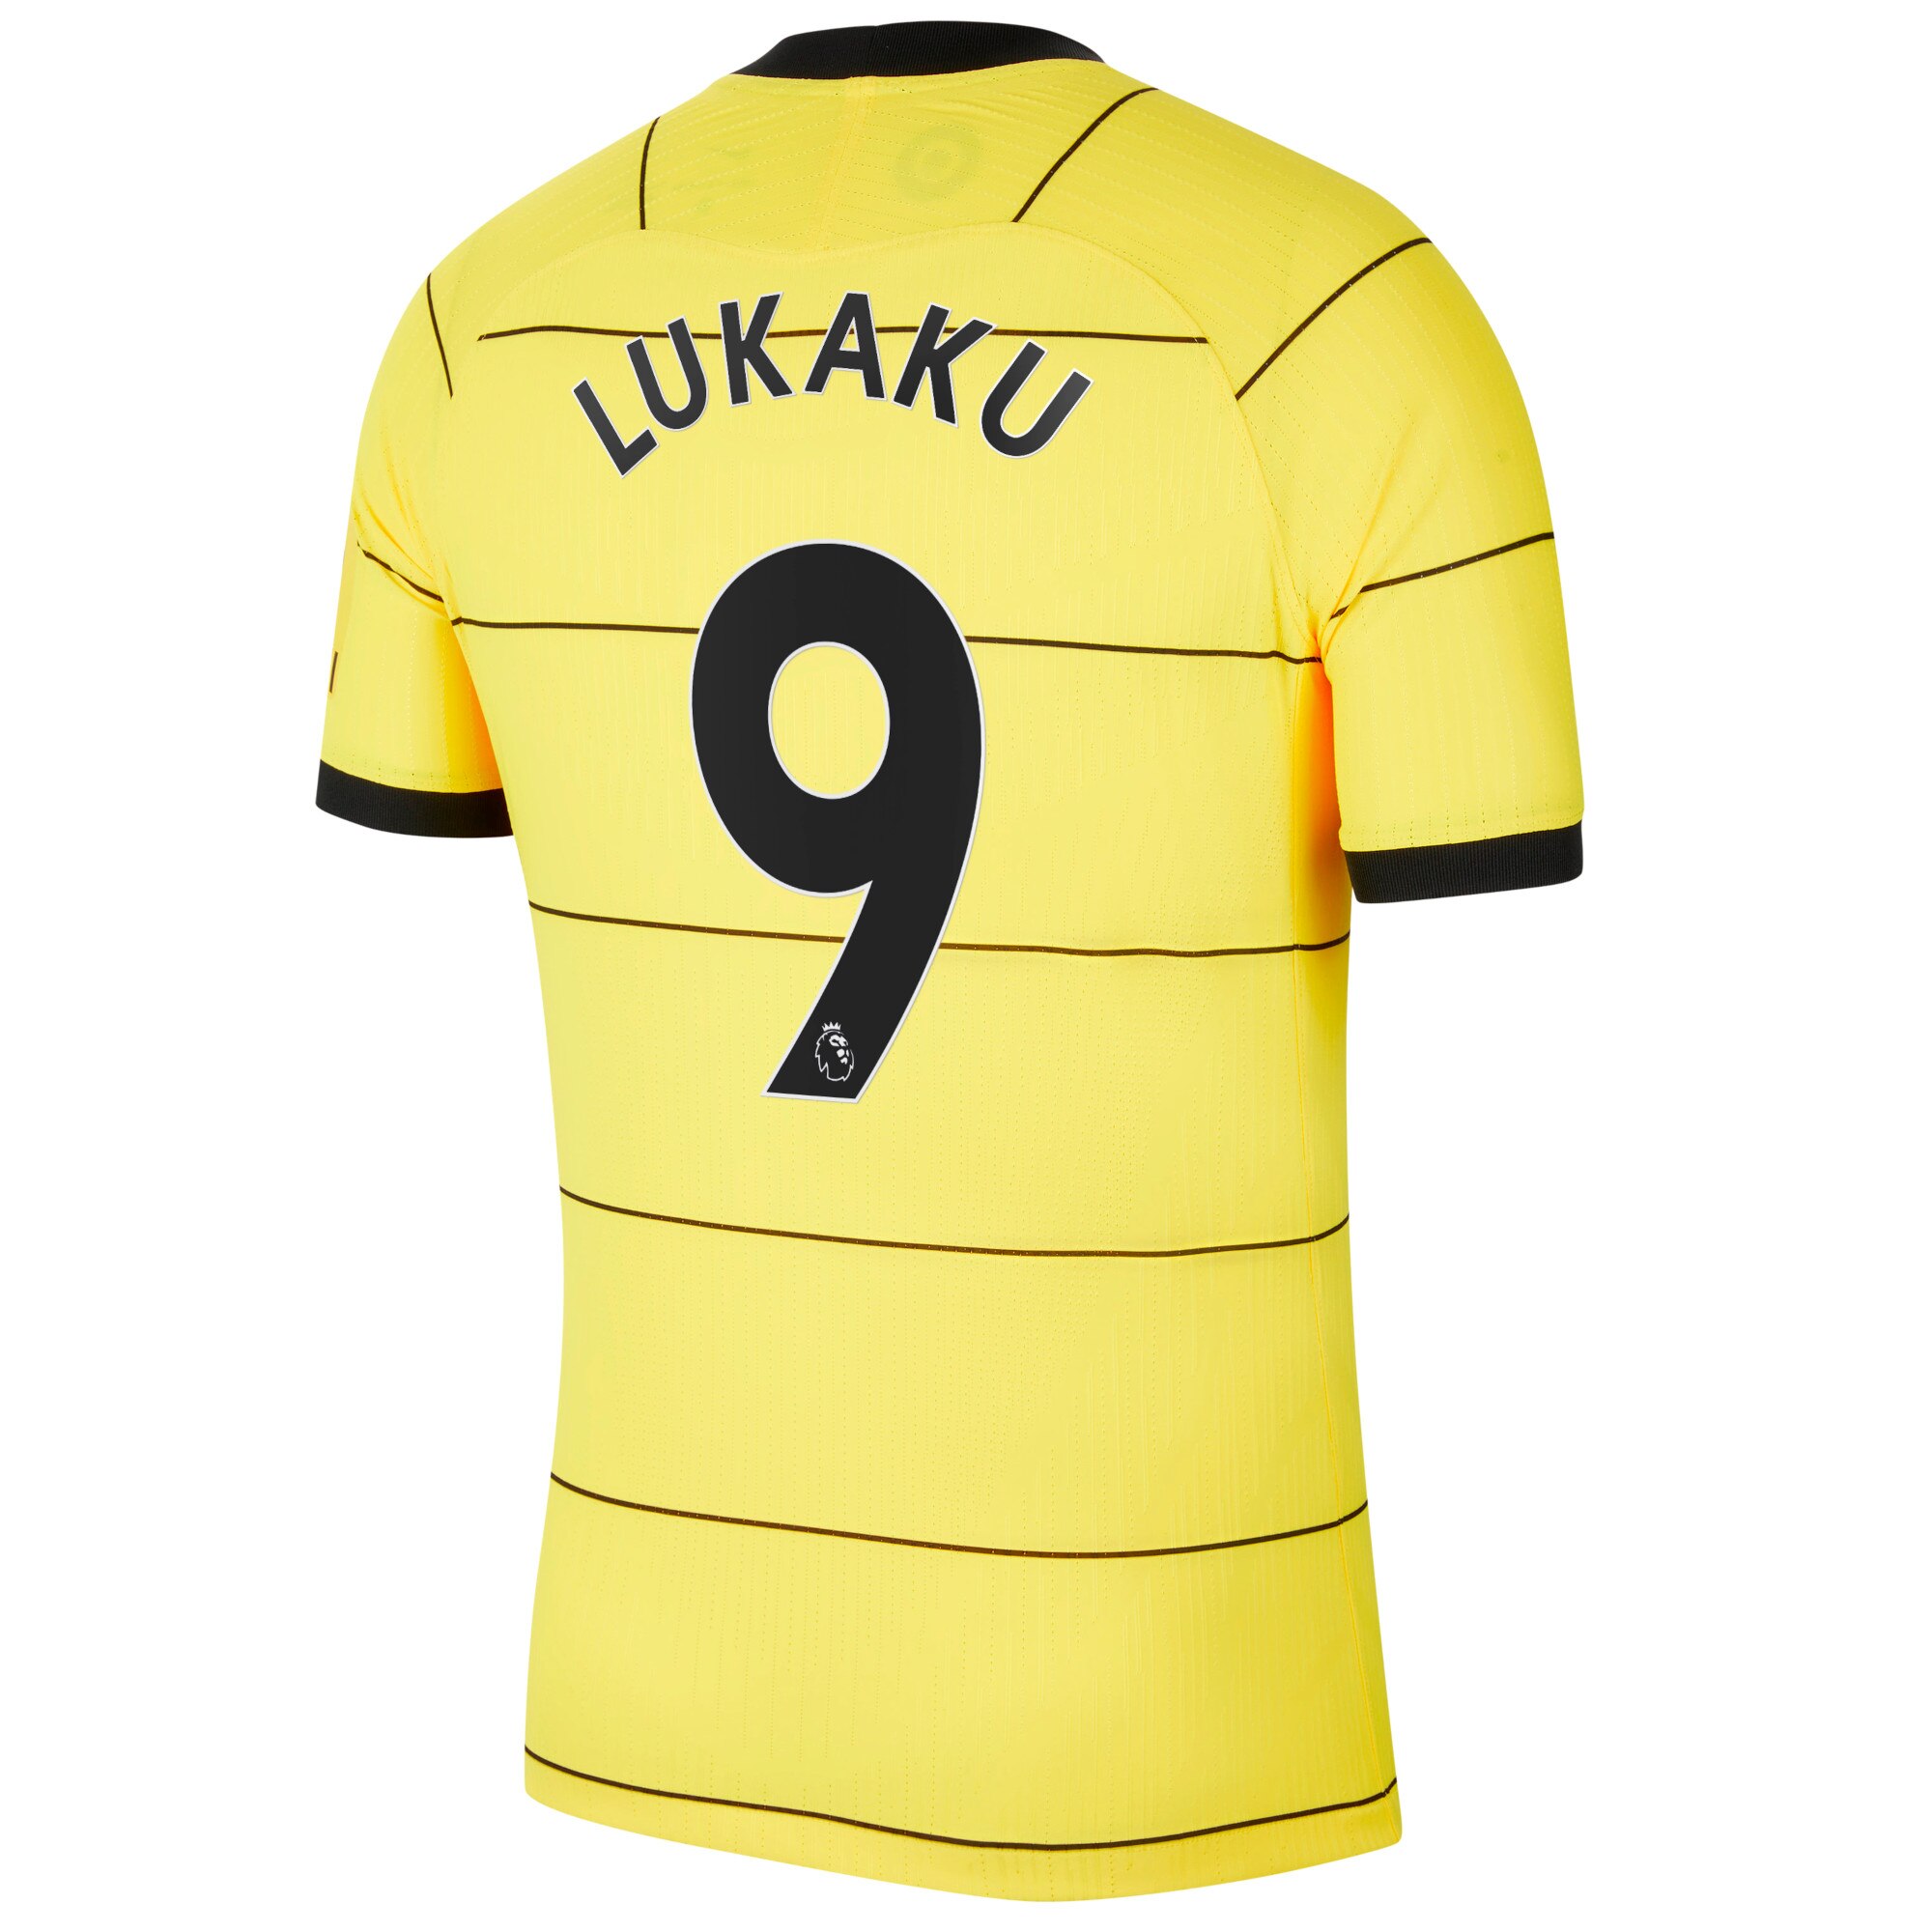 Chelsea Away Vapor Match Shirt 2021-22 with Lukaku 9 printing